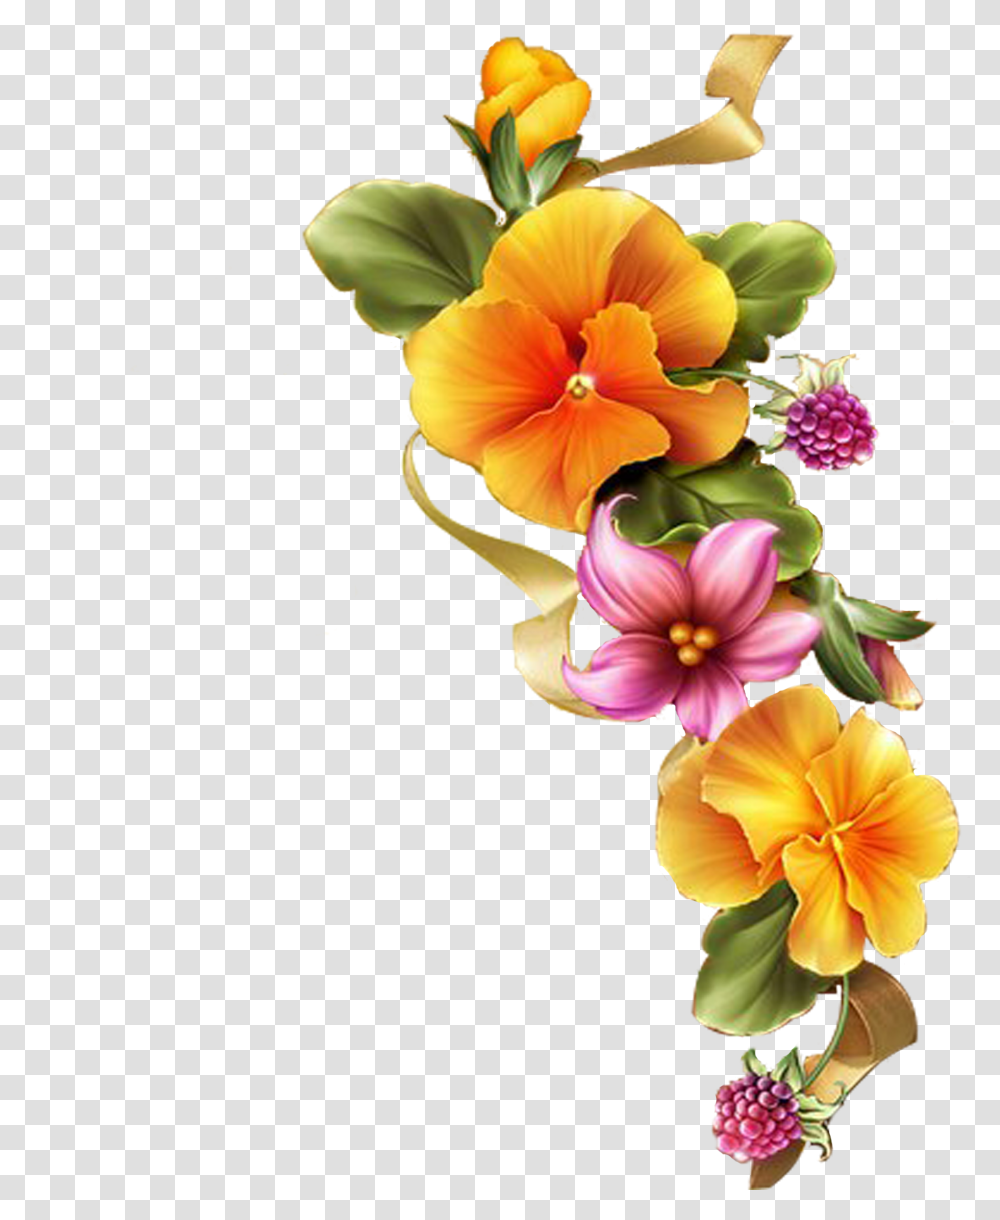 C3246 8499c47c Orig Floral Border Pansies Flower Clipart Orange Flower Borders, Plant, Floral Design, Pattern Transparent Png